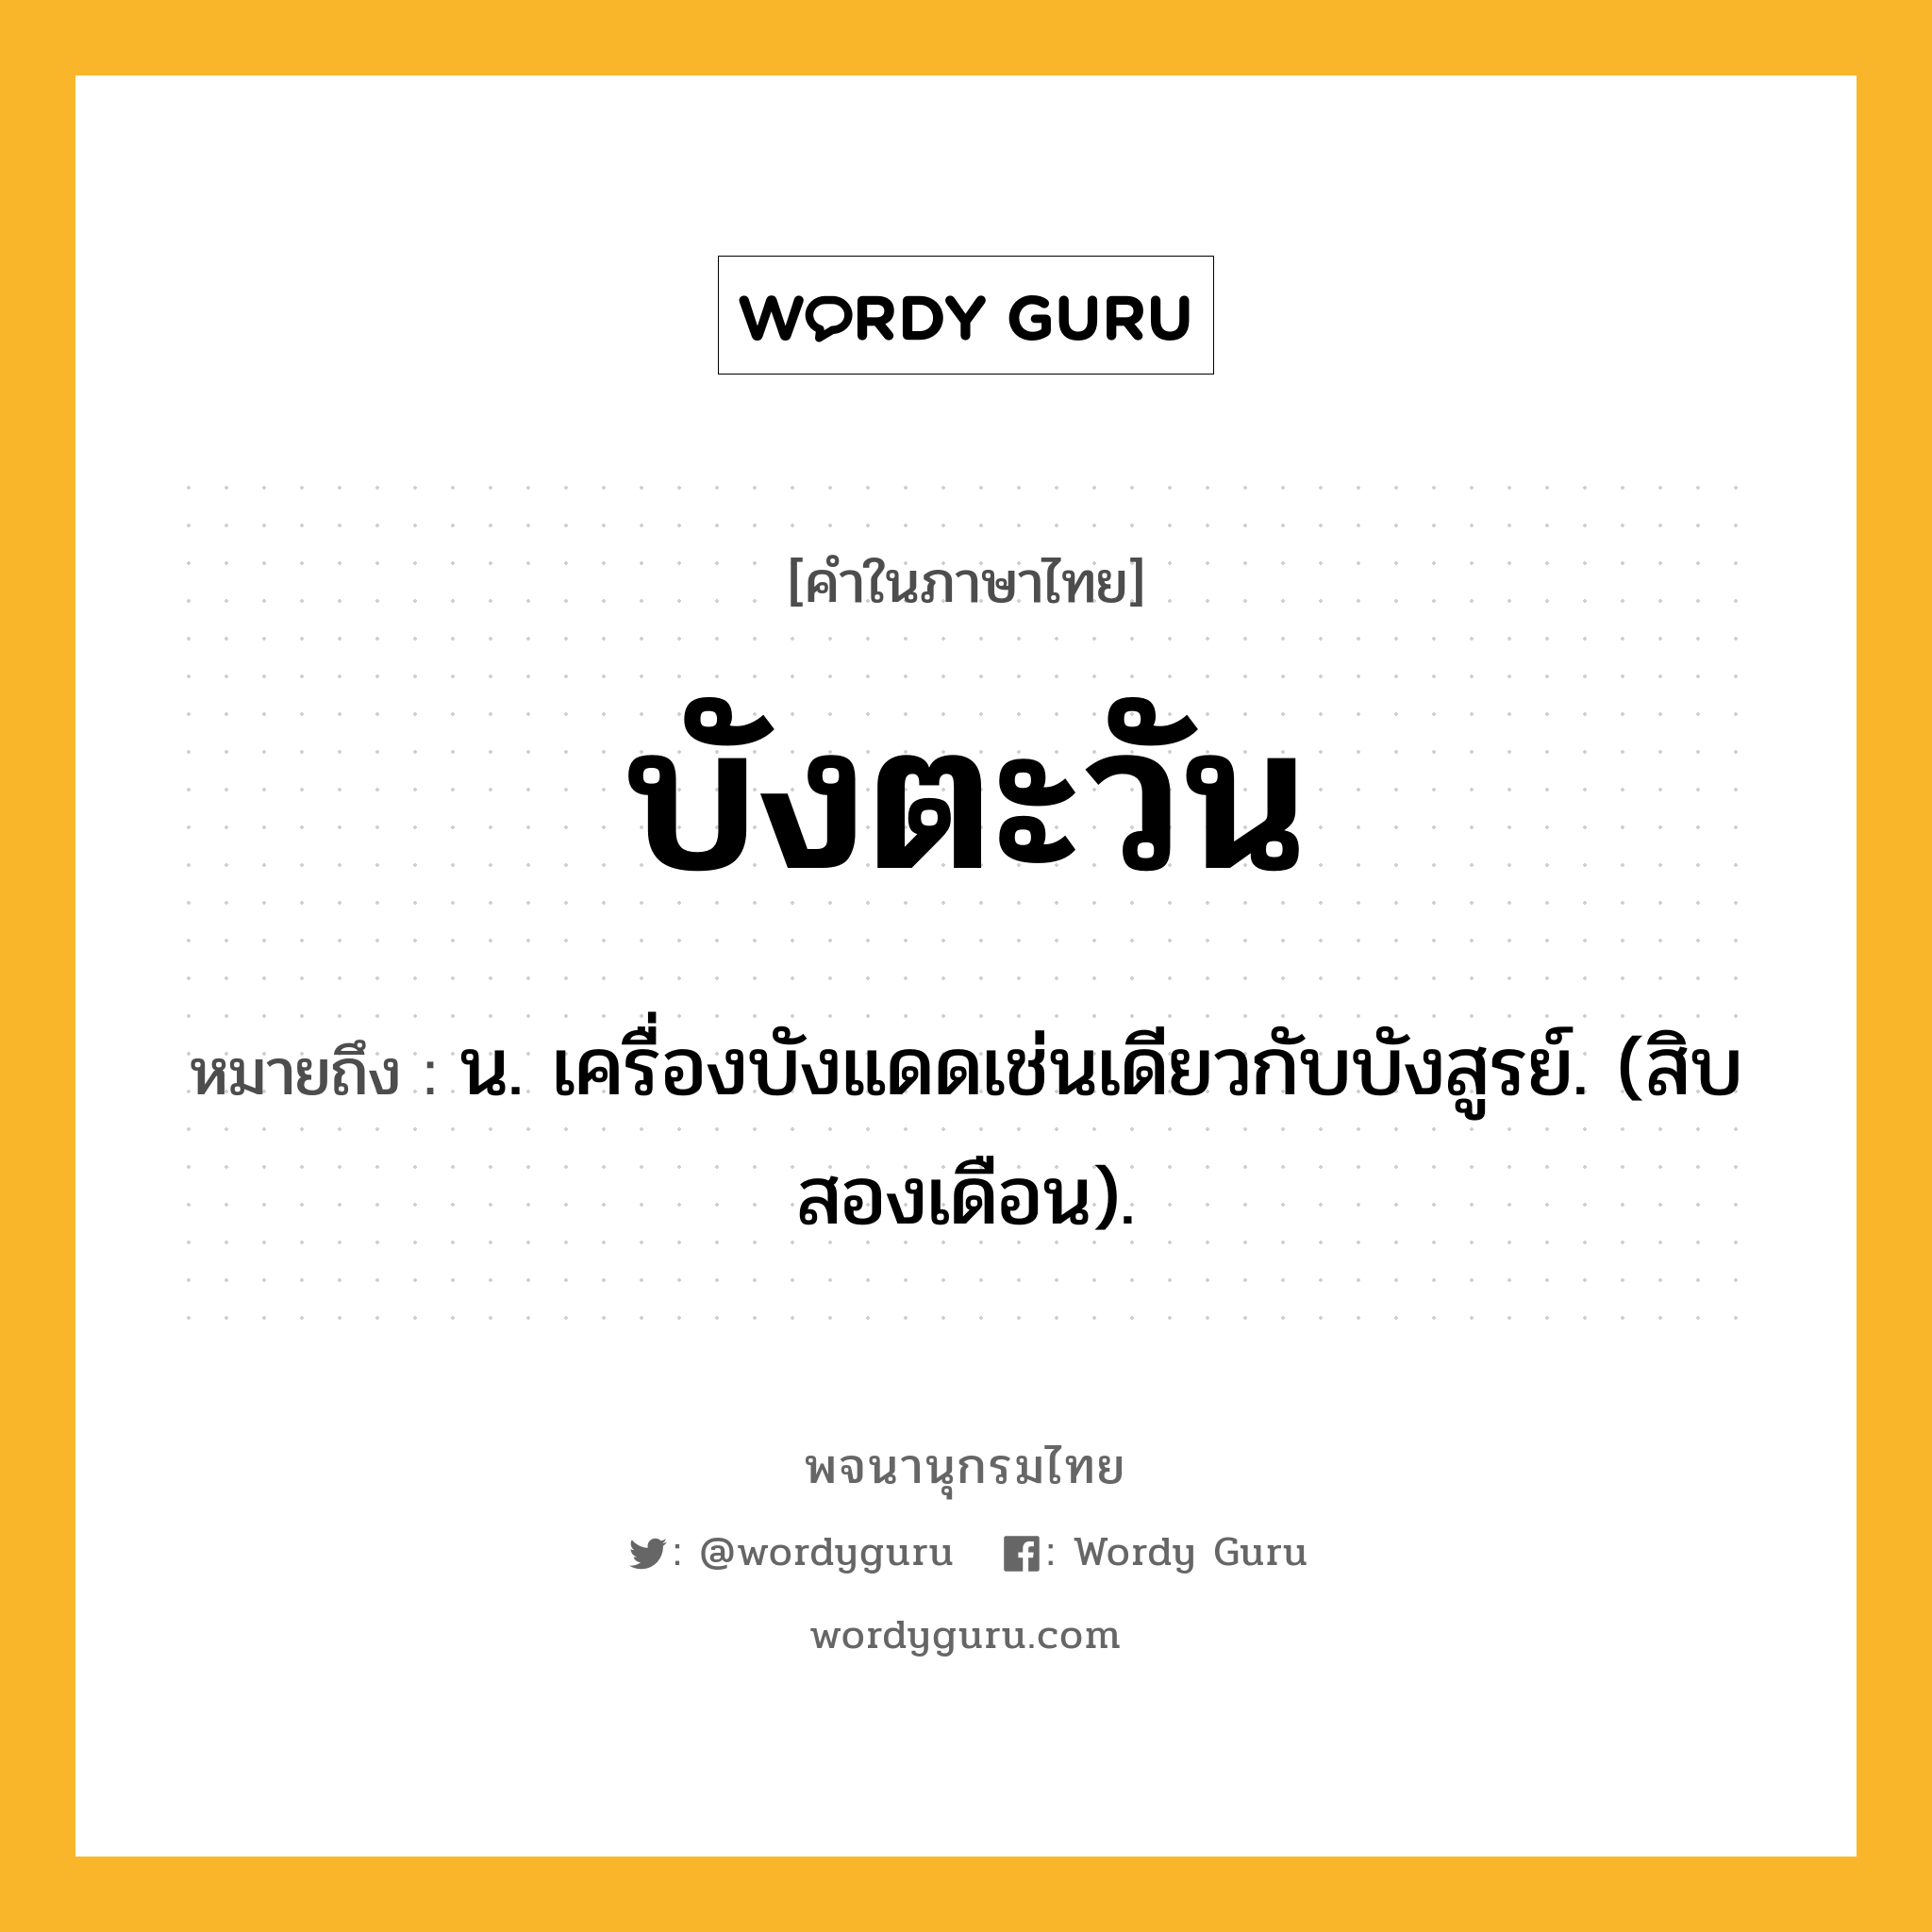 บังตะวัน ความหมาย หมายถึงอะไร?, คำในภาษาไทย บังตะวัน หมายถึง น. เครื่องบังแดดเช่นเดียวกับบังสูรย์. (สิบสองเดือน).